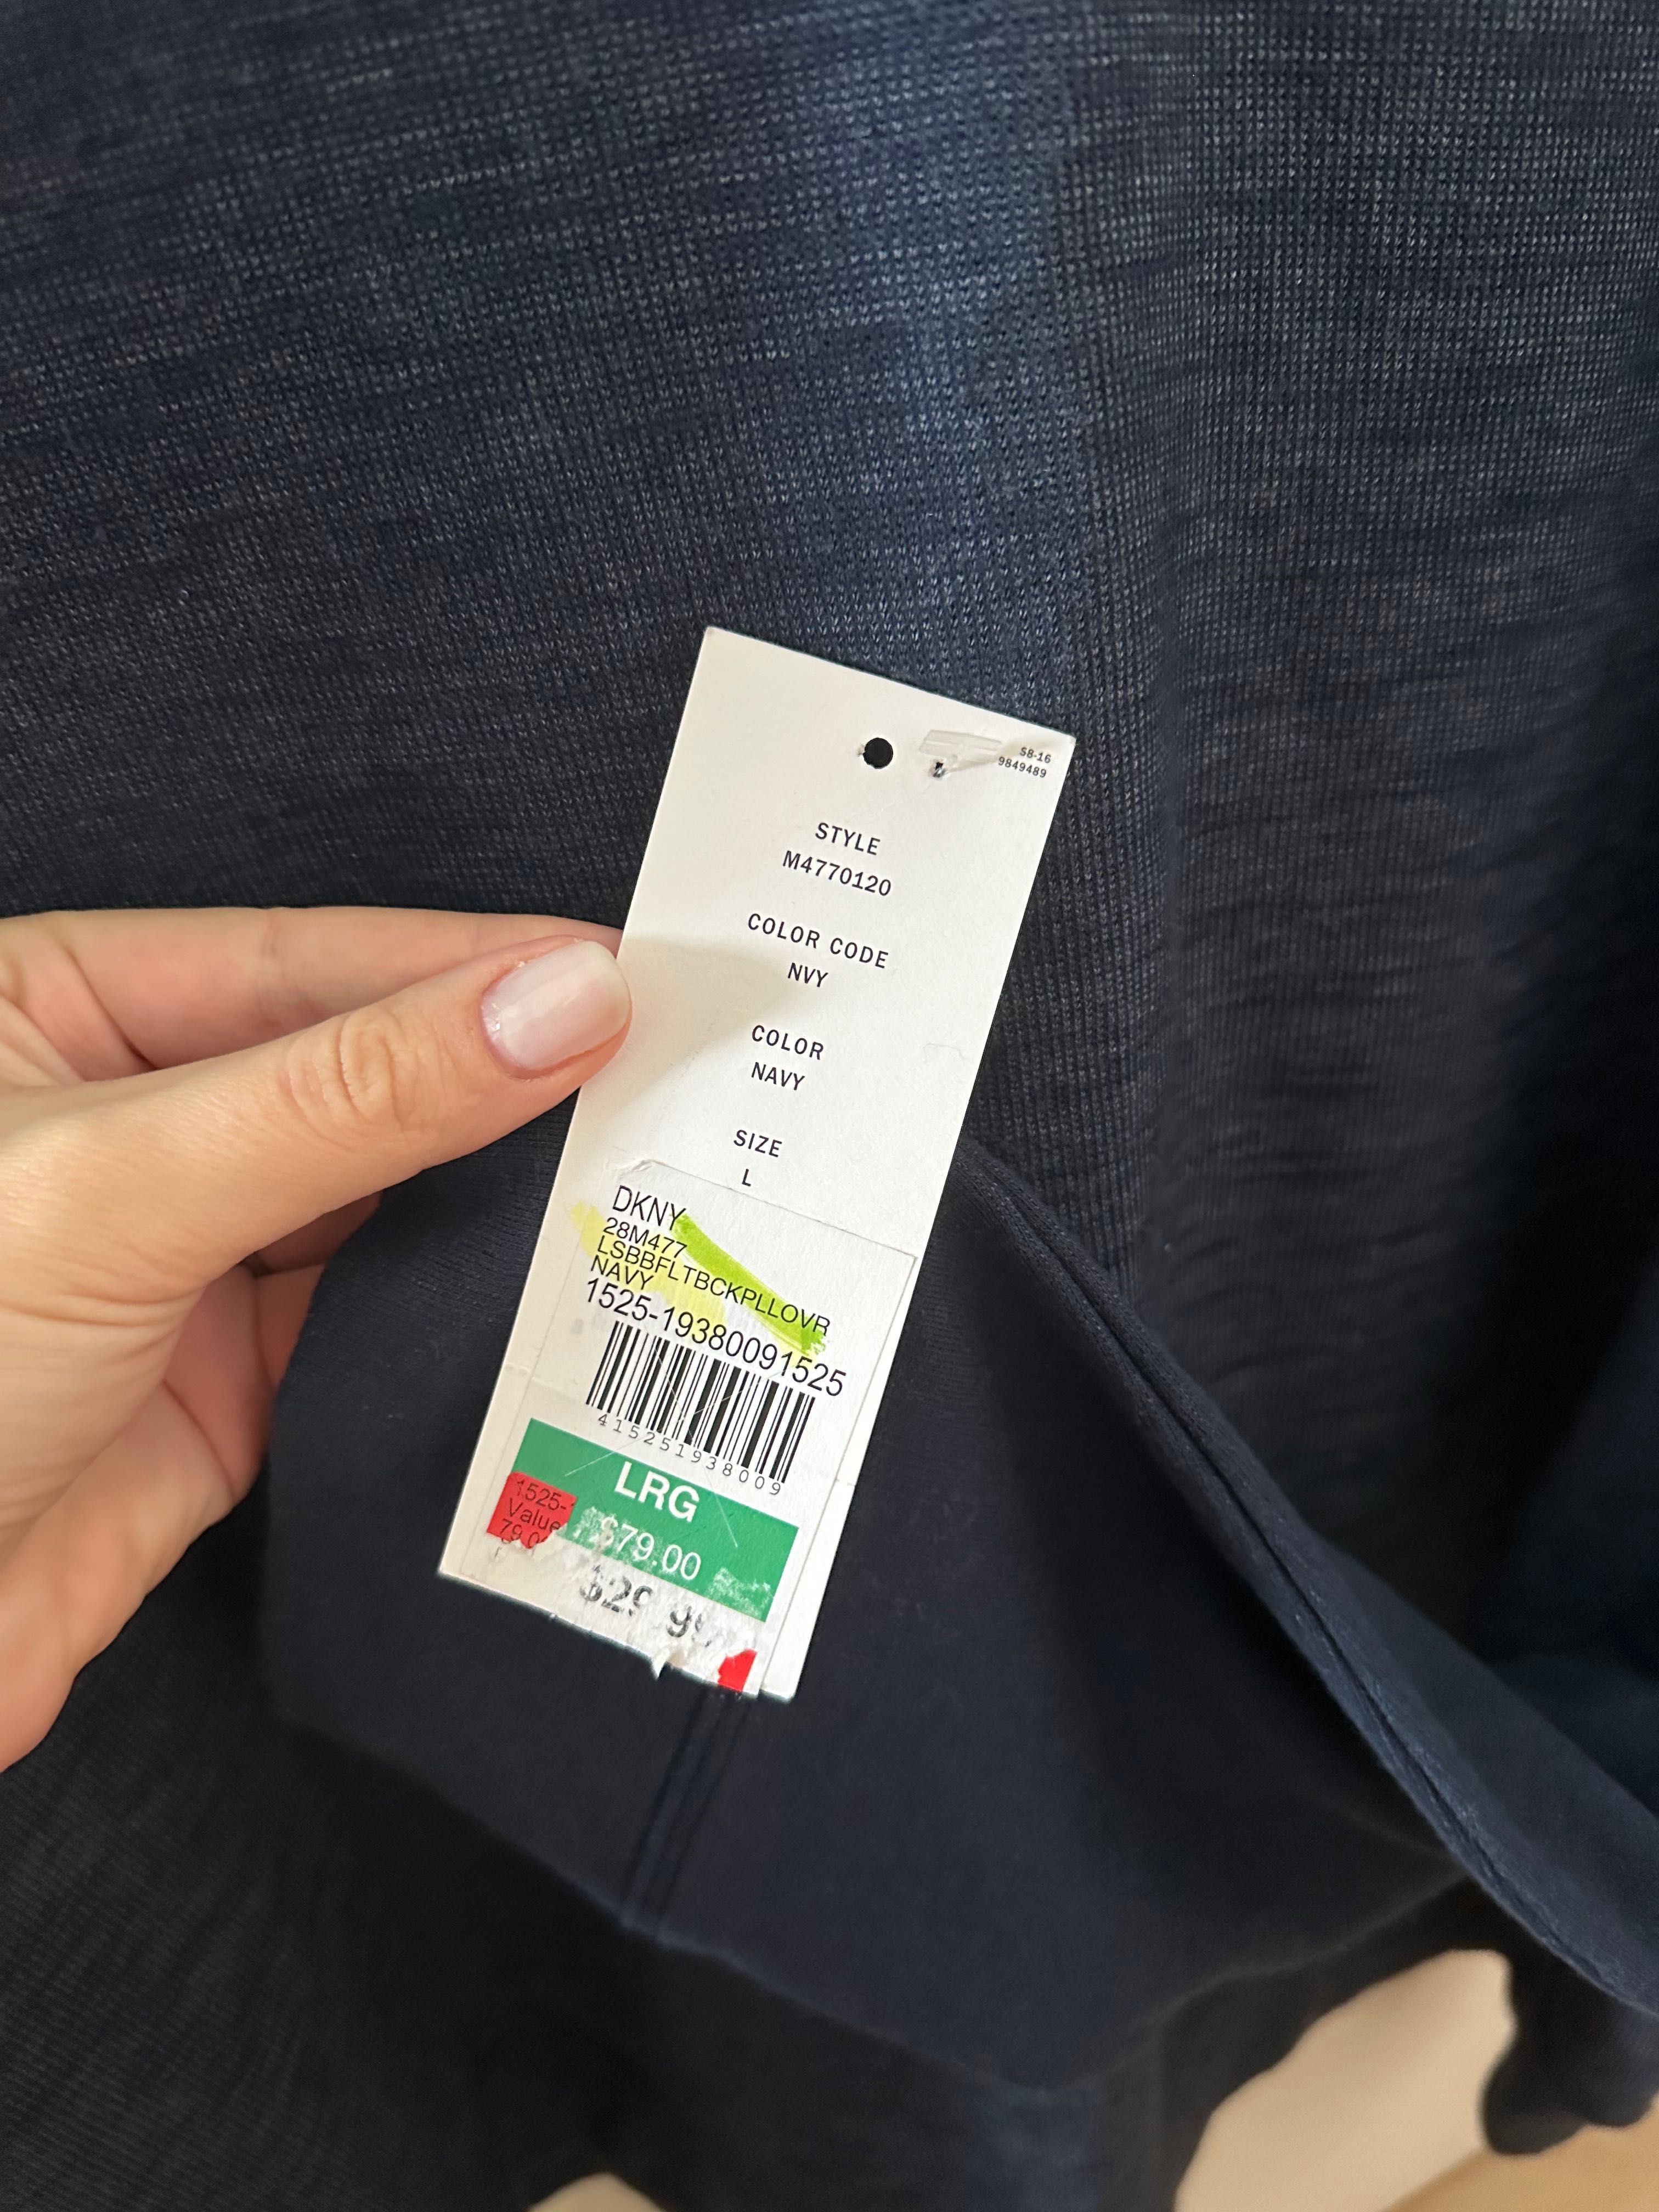 Мъжка блуза DKNY (размер L)